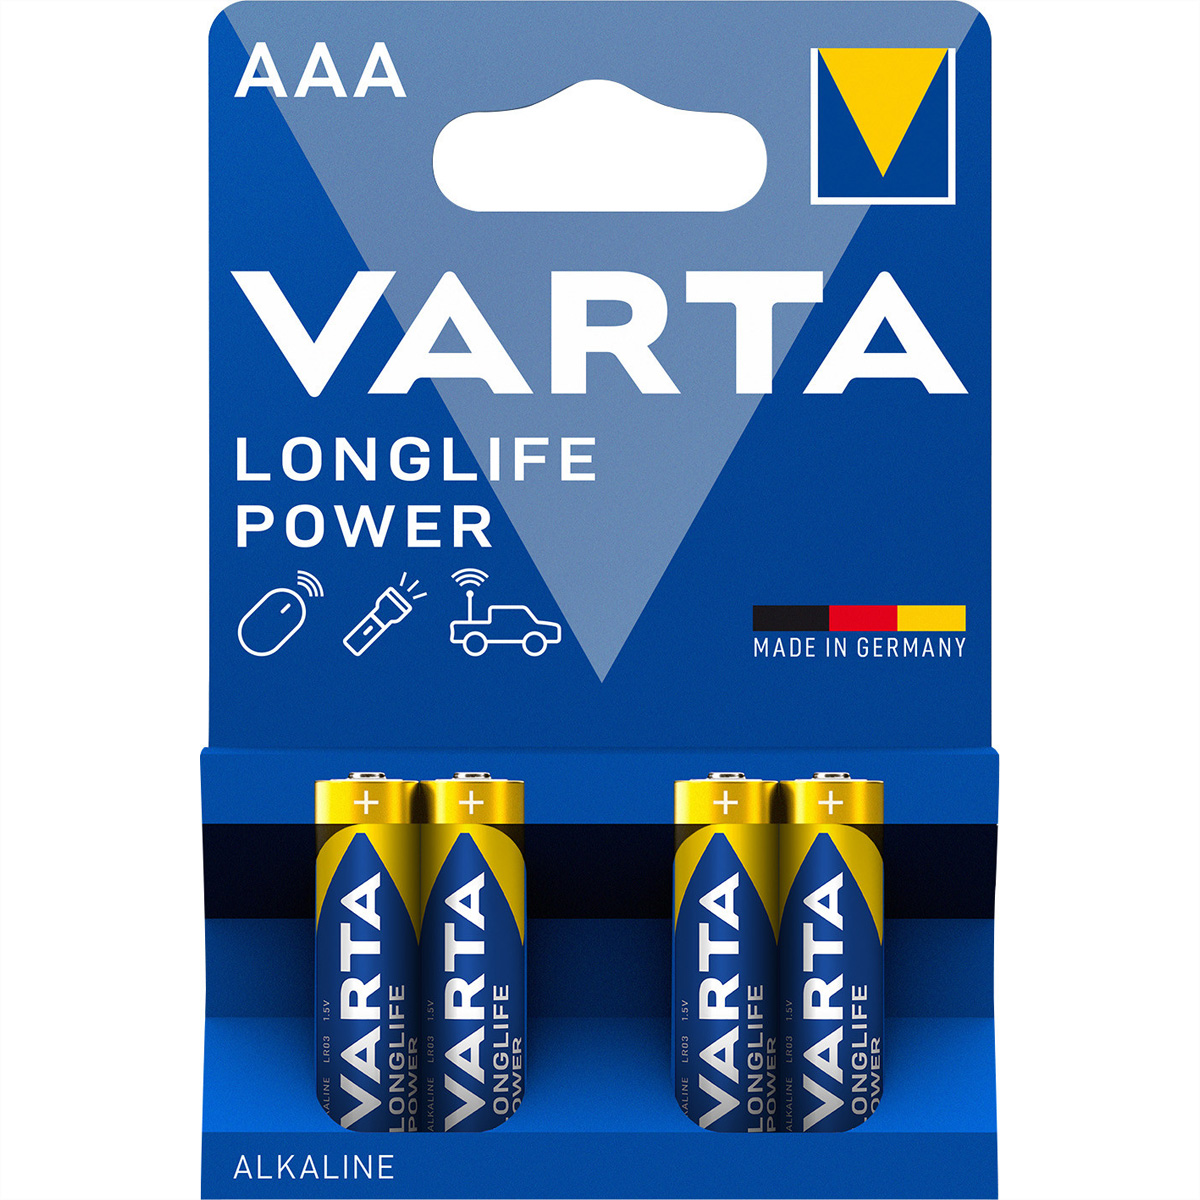 VARTA Batterie Micro, AAA, LR03,4er, 1,5V, 1220mAh, Longlife Power 4 Zellen per Blister